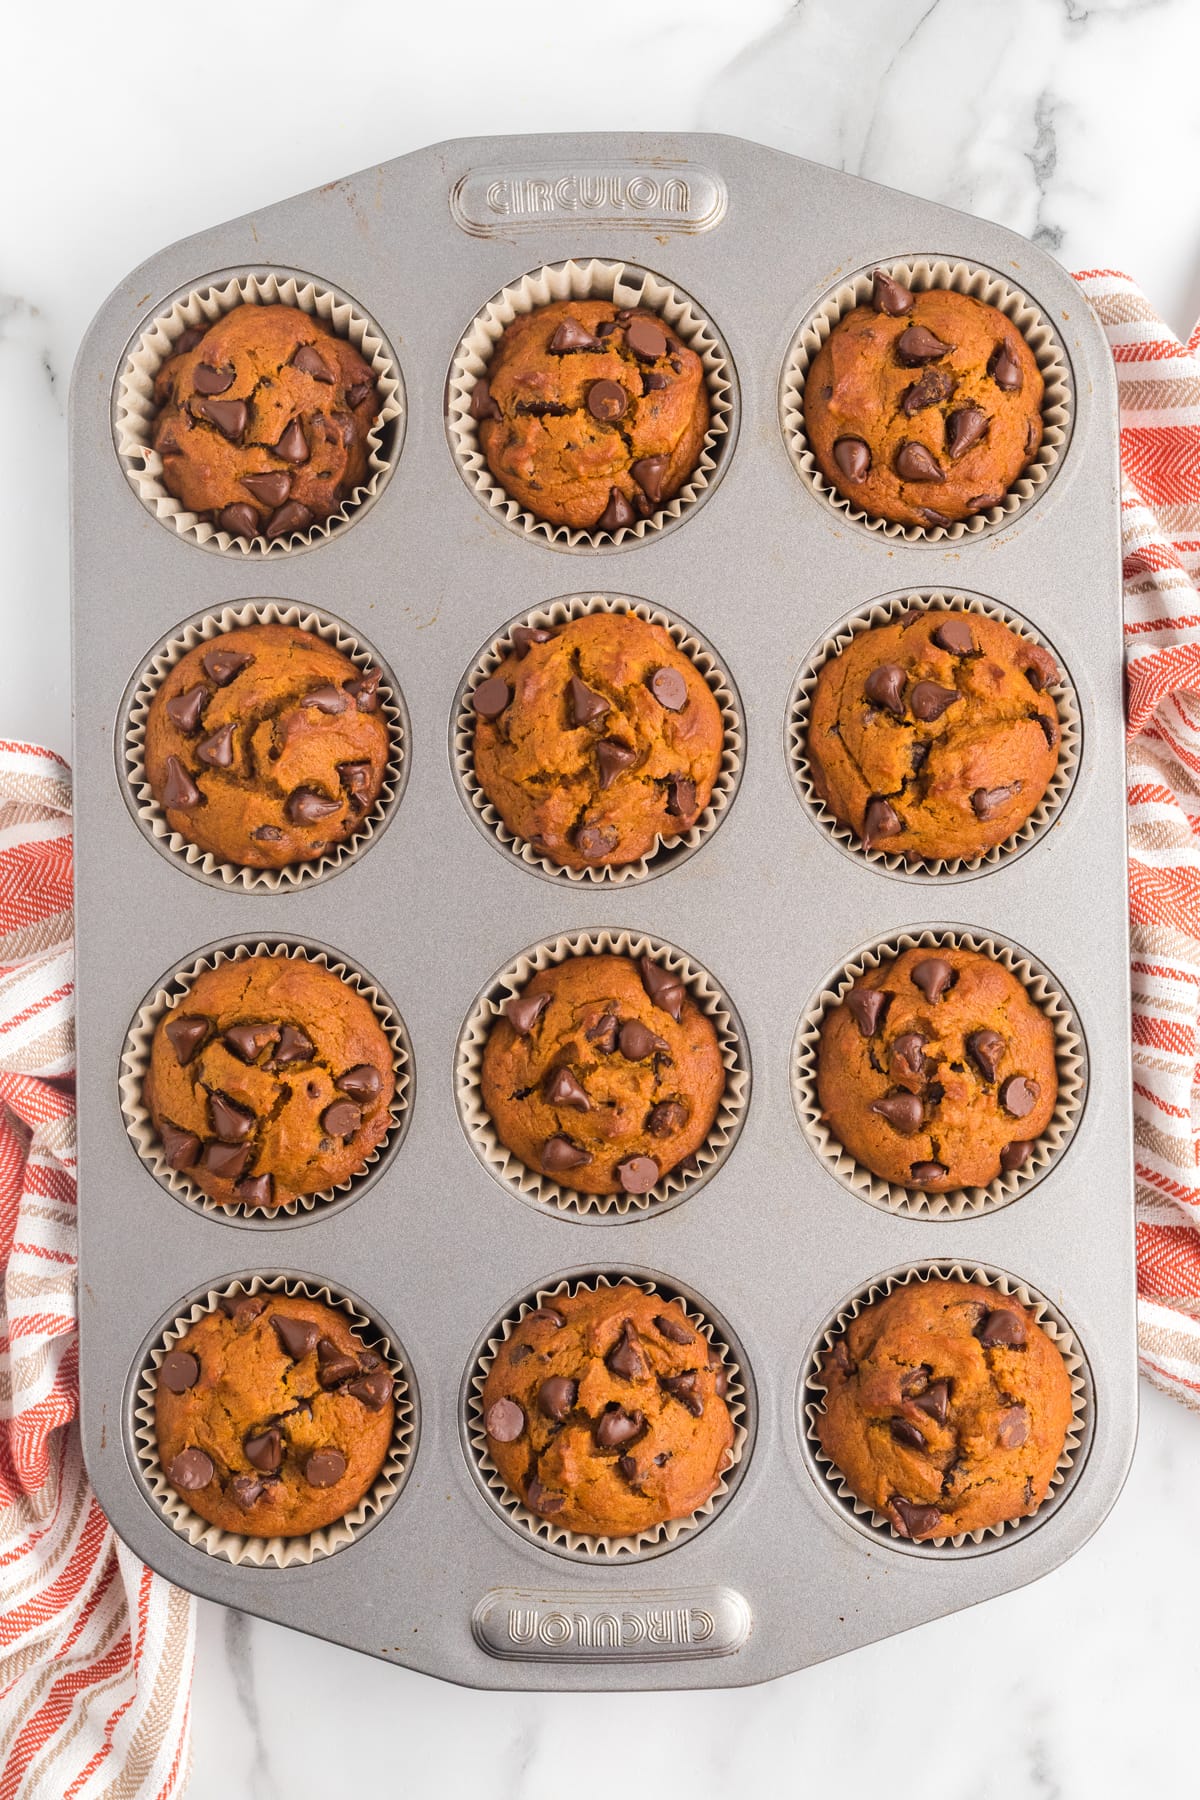 Chocolate chip pumpkin muffins in a muffin pan